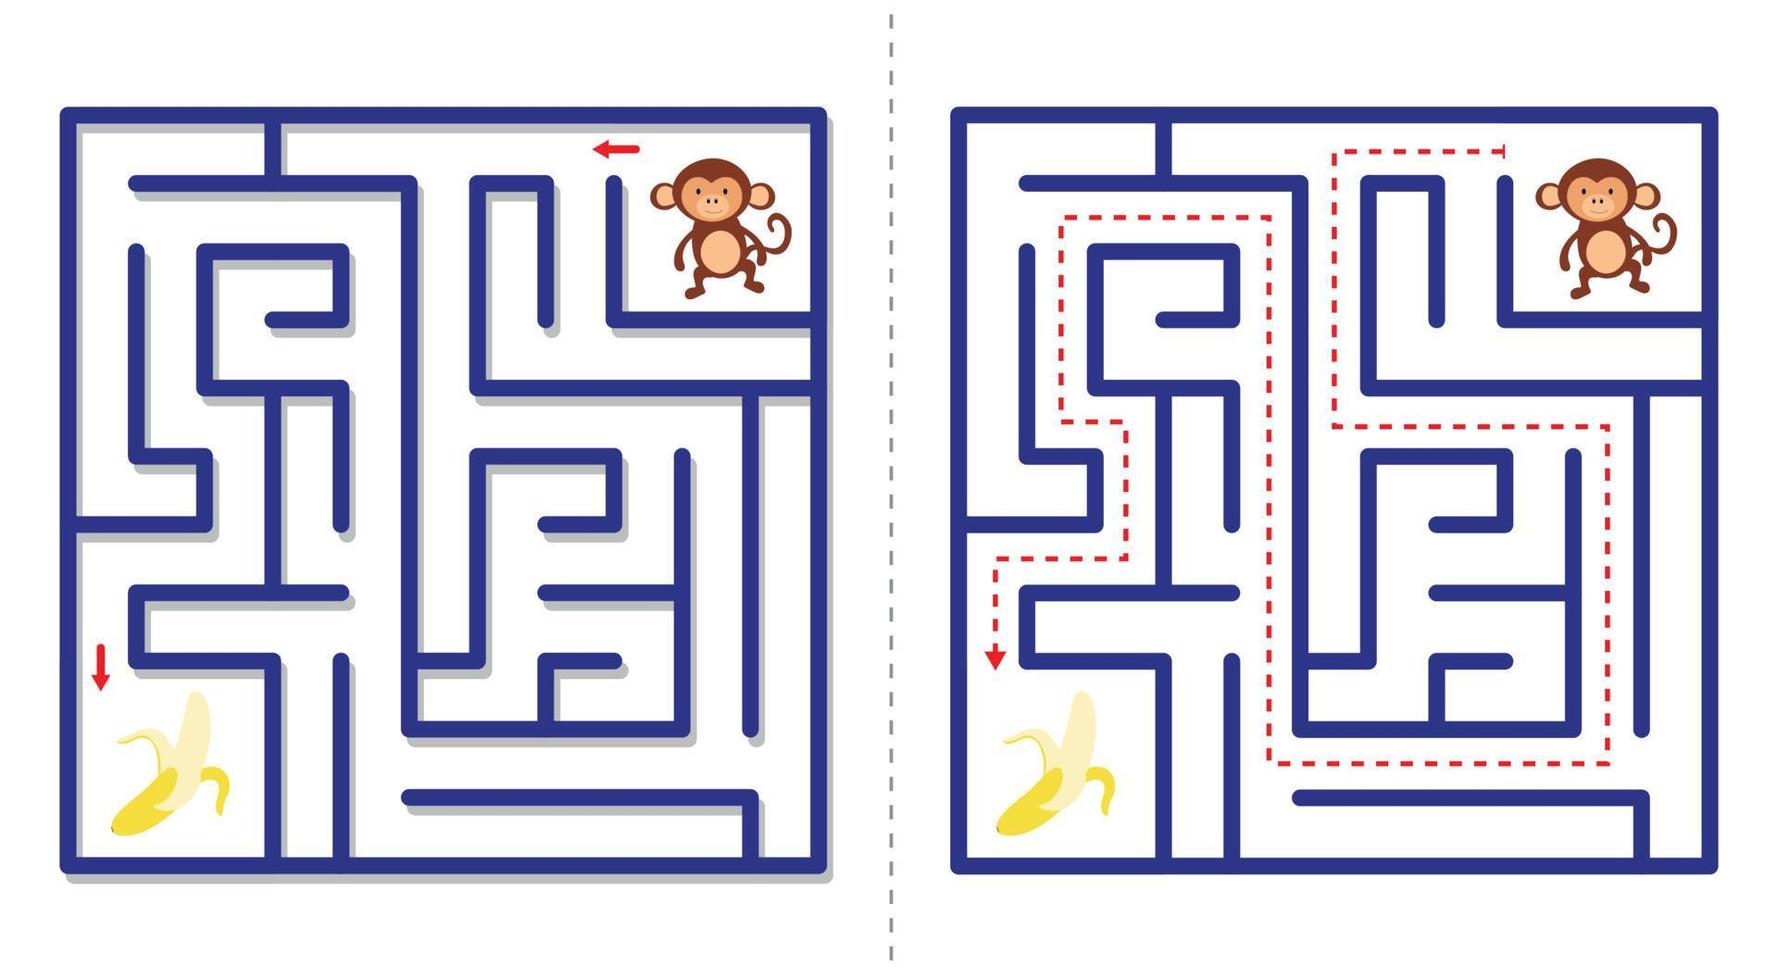 einfach Matze abstrakt Spiel mit antworten. Hilfe Affe finden Banane. vektor